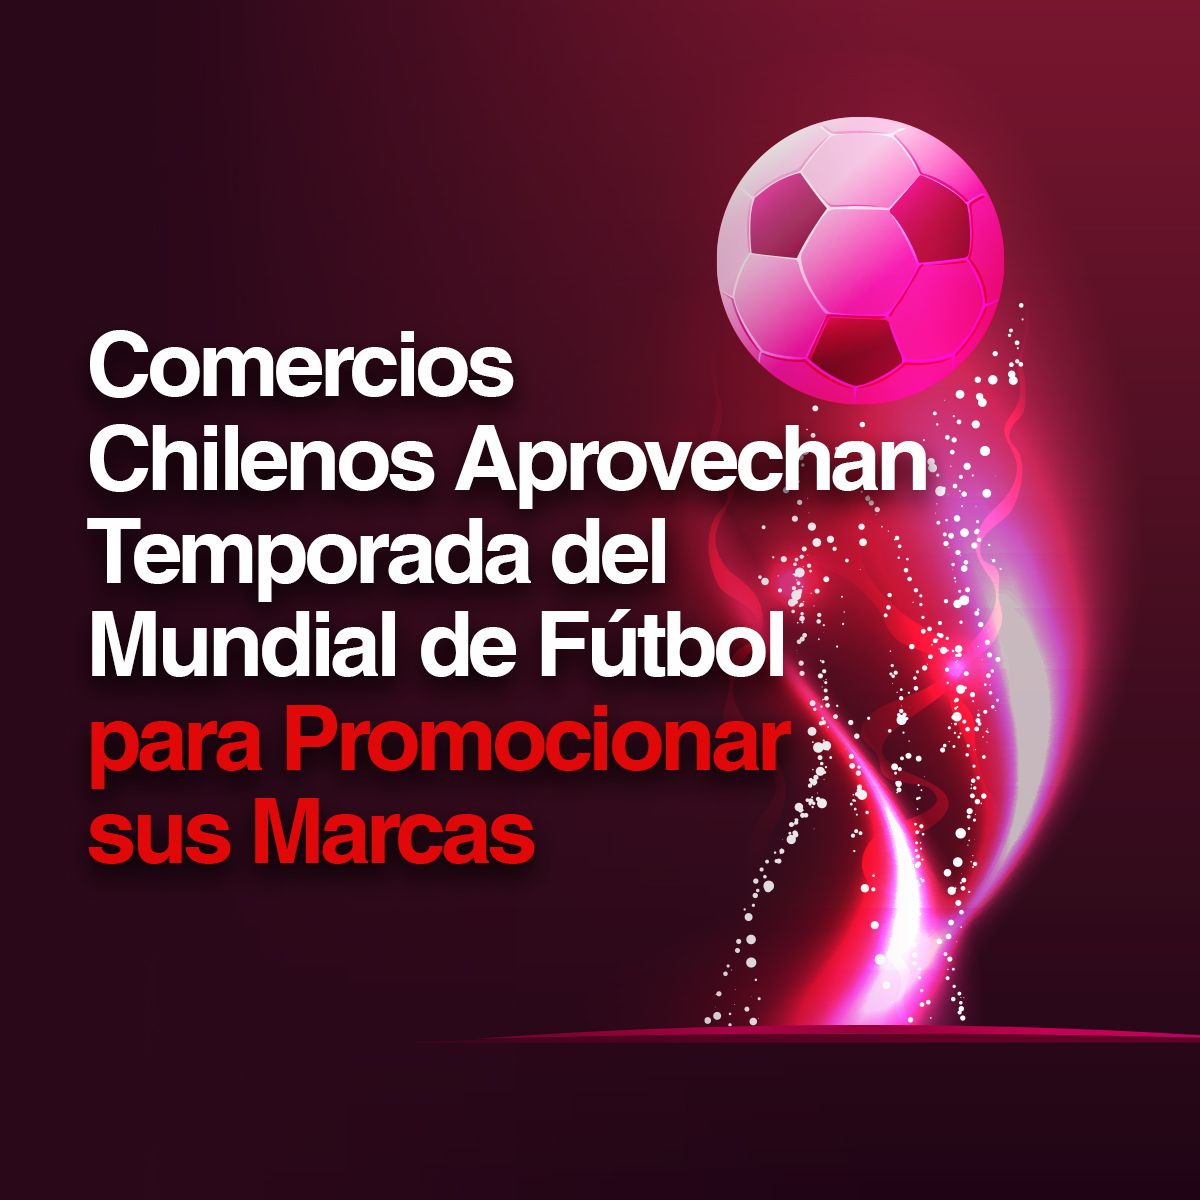 Comercios Chilenos Aprovechan Temporada del Mundial de Fútbol para Promocionar sus Marcas